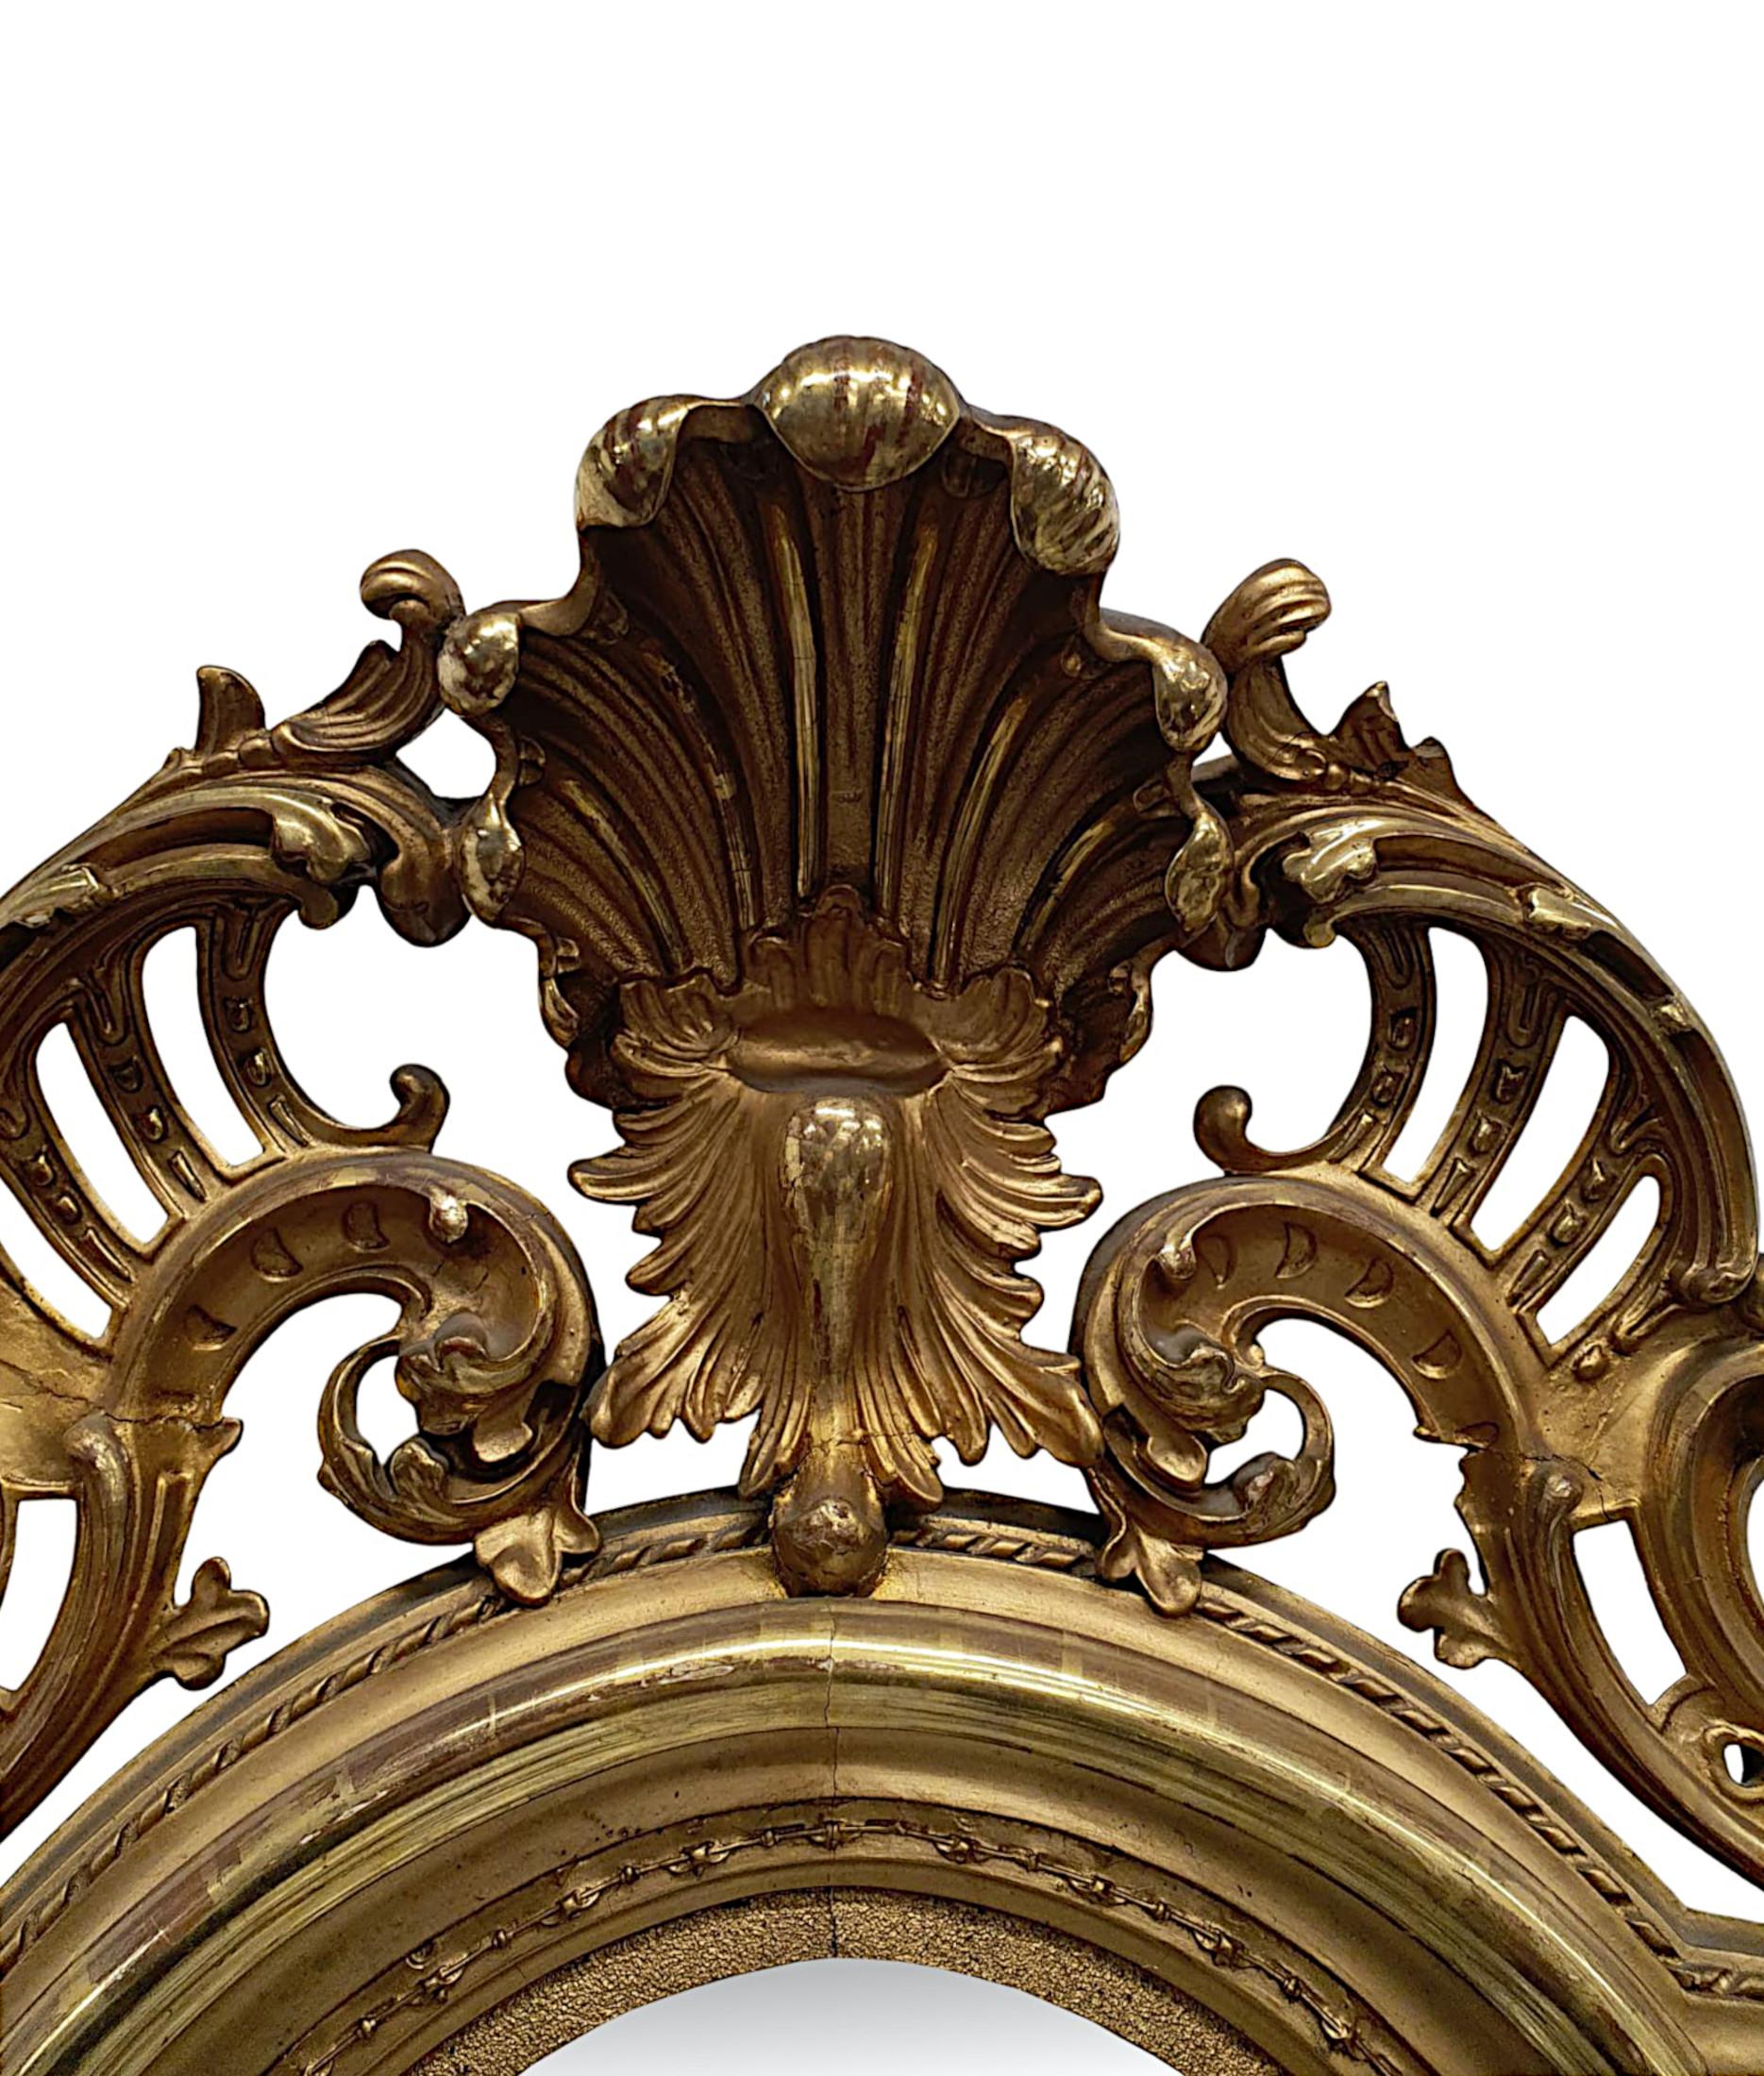 Eine fabelhafte 19. Jahrhundert vergoldet Halle, Pier oder Dressing Spiegel von großen Proportionen und außergewöhnliche Qualität.  Die geformte Spiegelglasplatte befindet sich in einem fein handgeschnitzten, geformten und geriffelten Goldholzrahmen